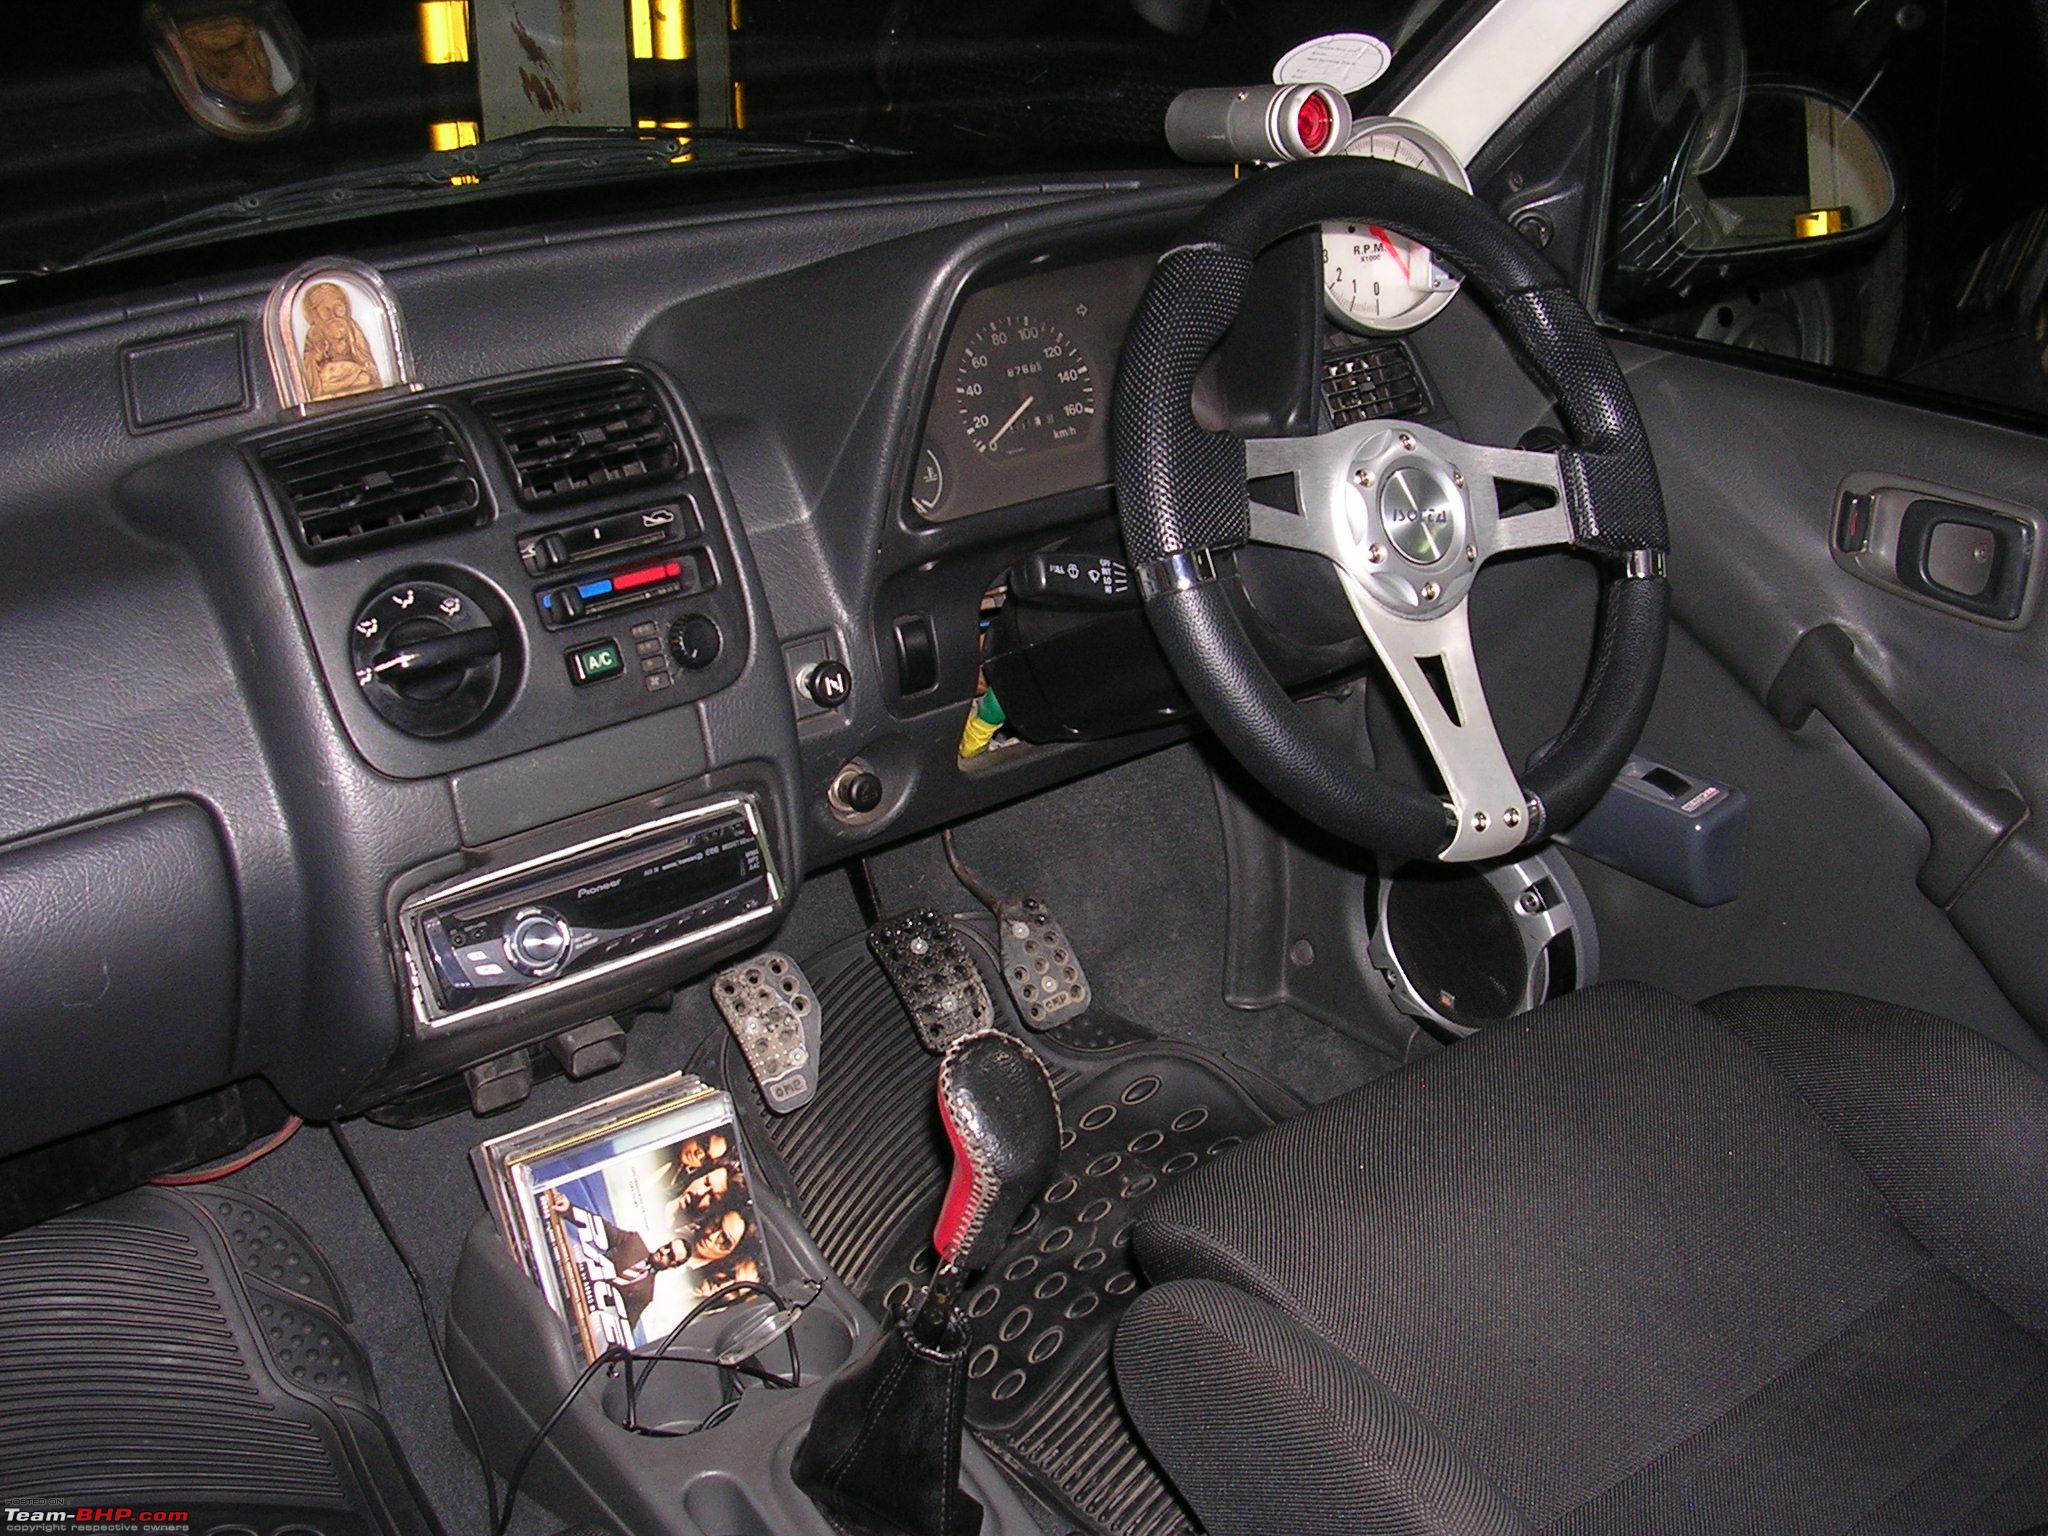 Used 1999 model Maruti Suzuki Zen Classic for sale in Pathanamthitta. ID  15637 - Carz4Sale